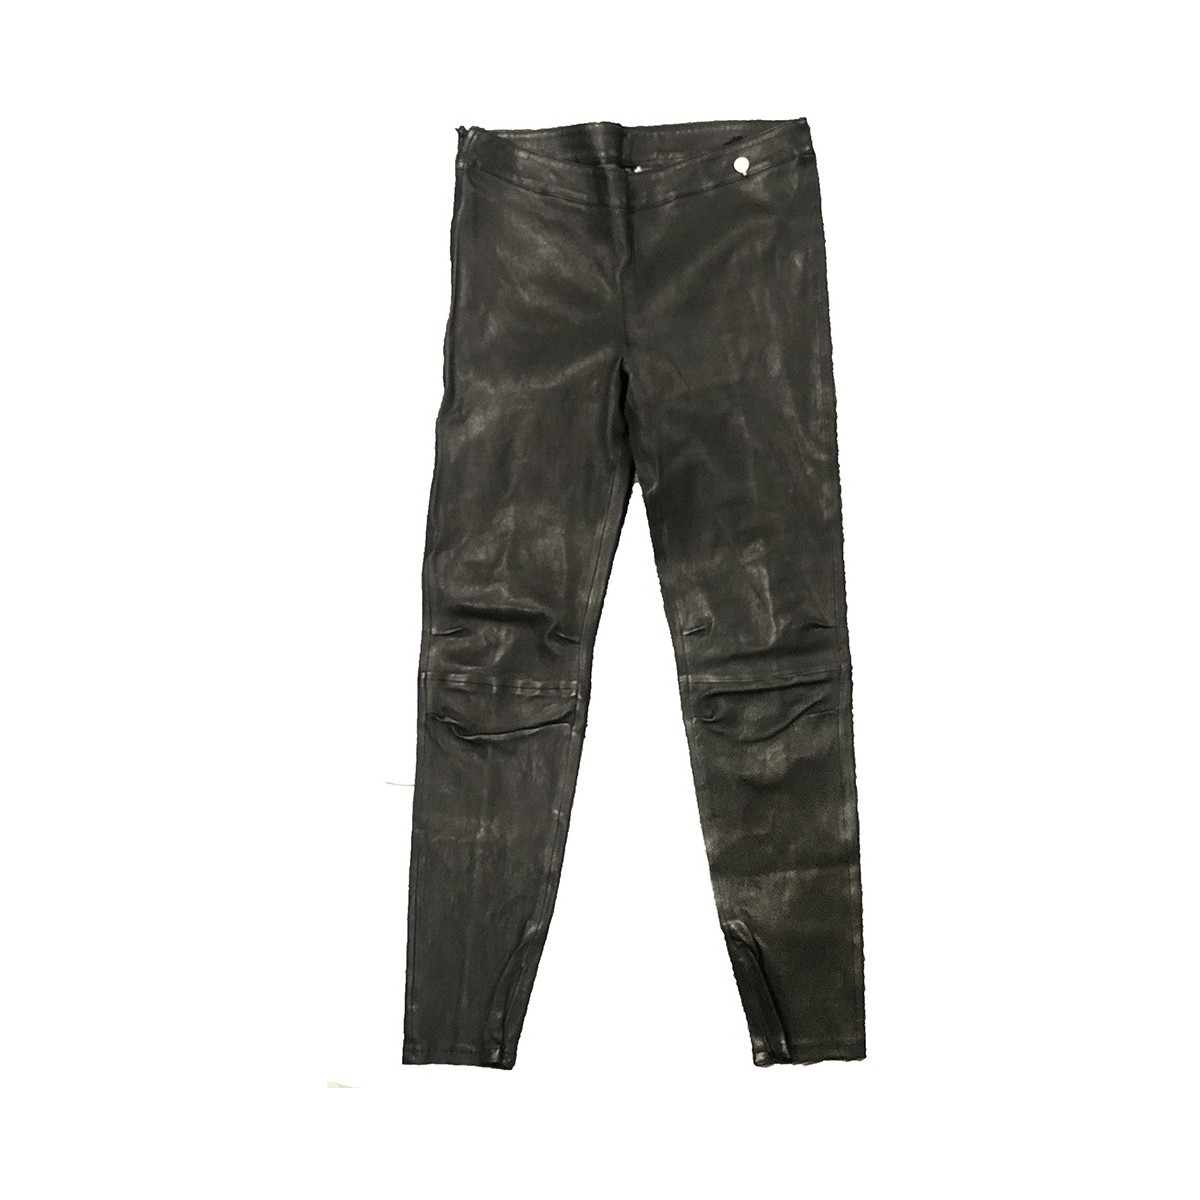 Vêtements Femme Pantalons fluides / Sarouels Rich & Royal Pantalon Noir Cuir 13Q997 Noir